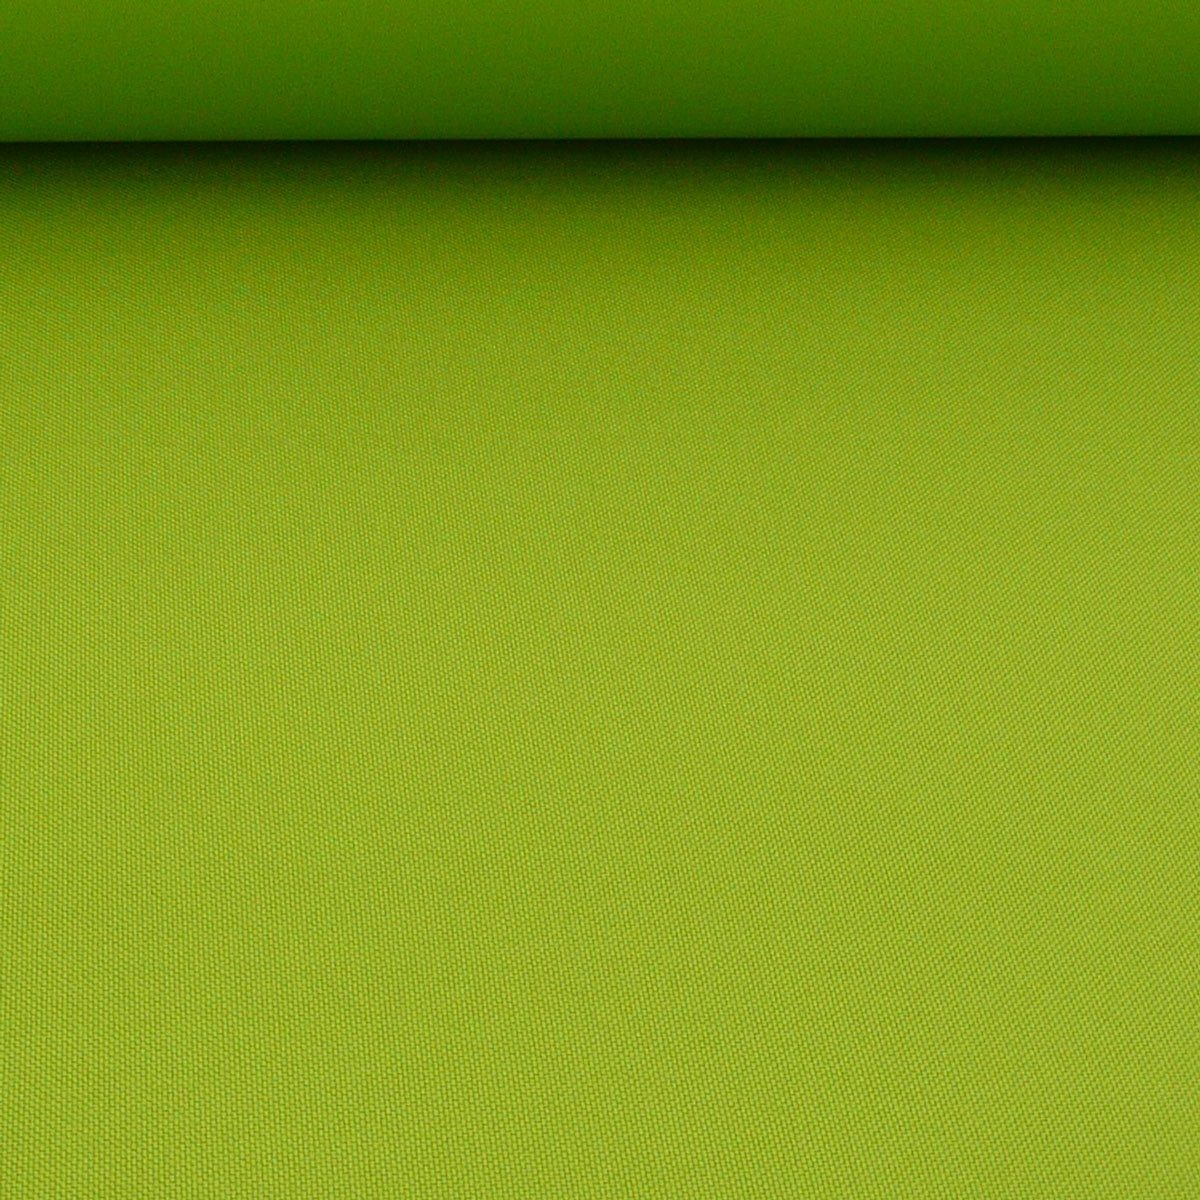 SCHÖNER LEBEN. Stoff Polyester Stoff Meterware PVC Coating wasserabweisend apfelgrün 1,5m